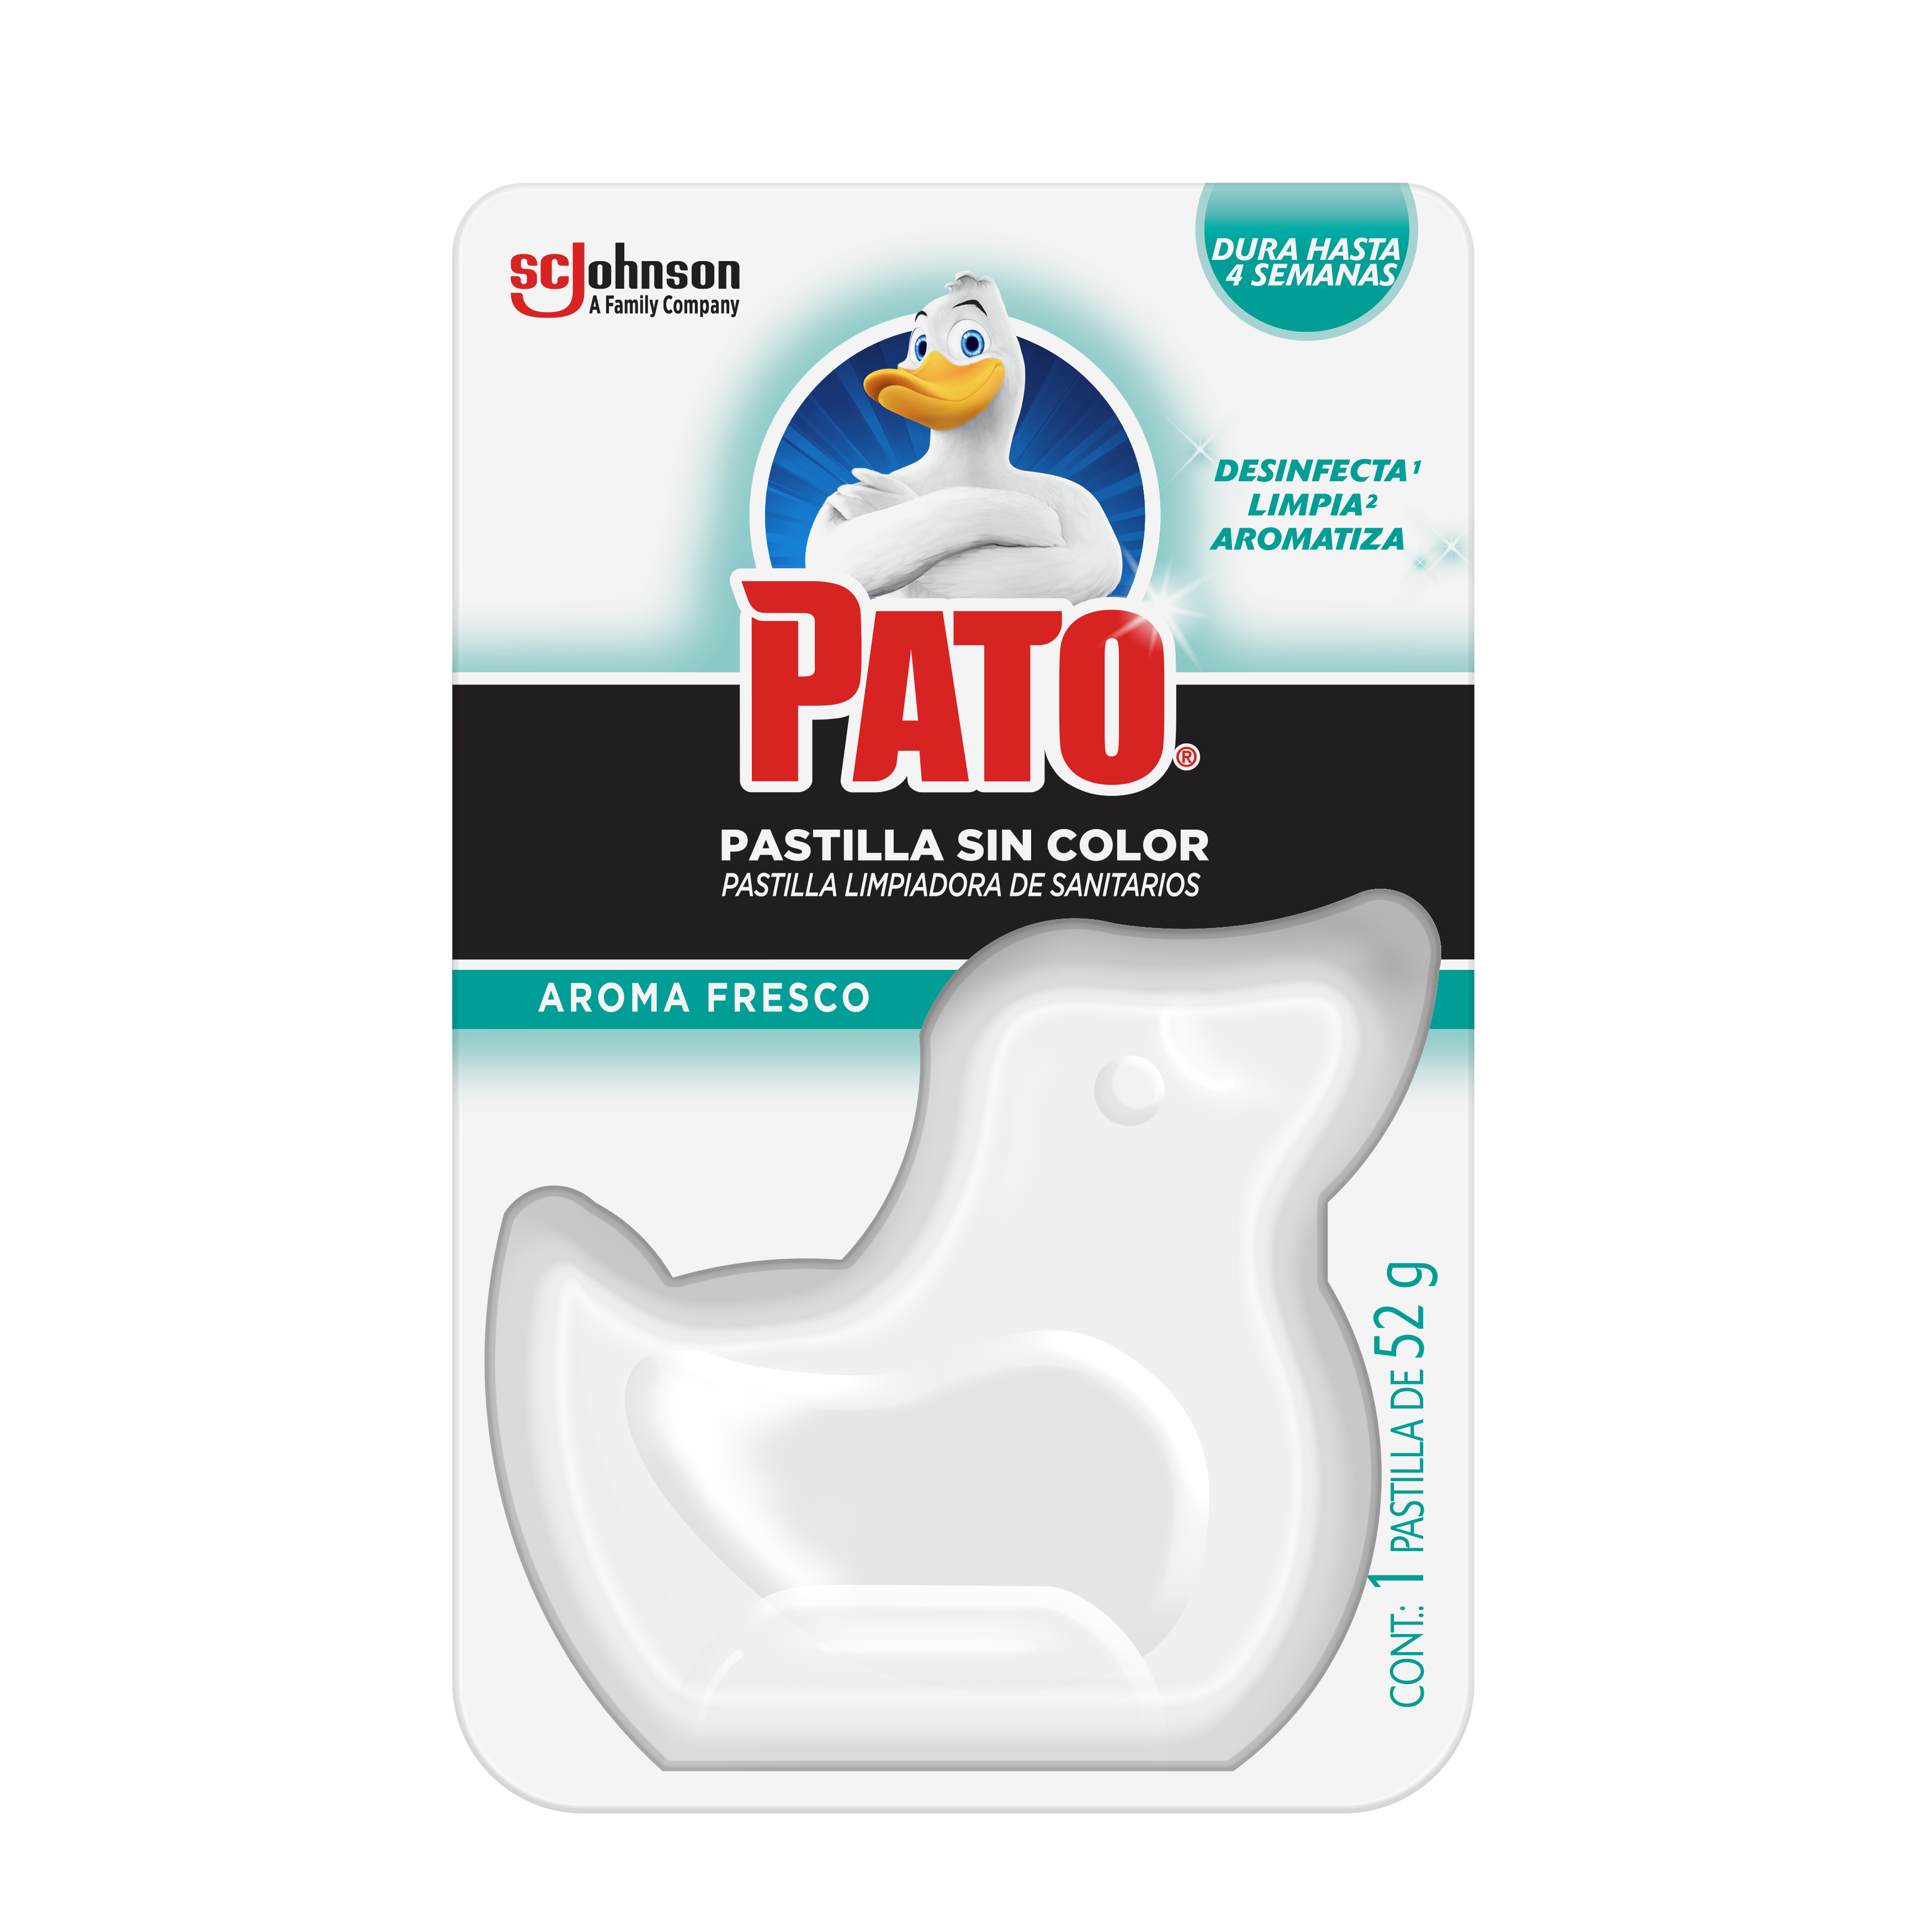 Pato® Pastilla Sin Color